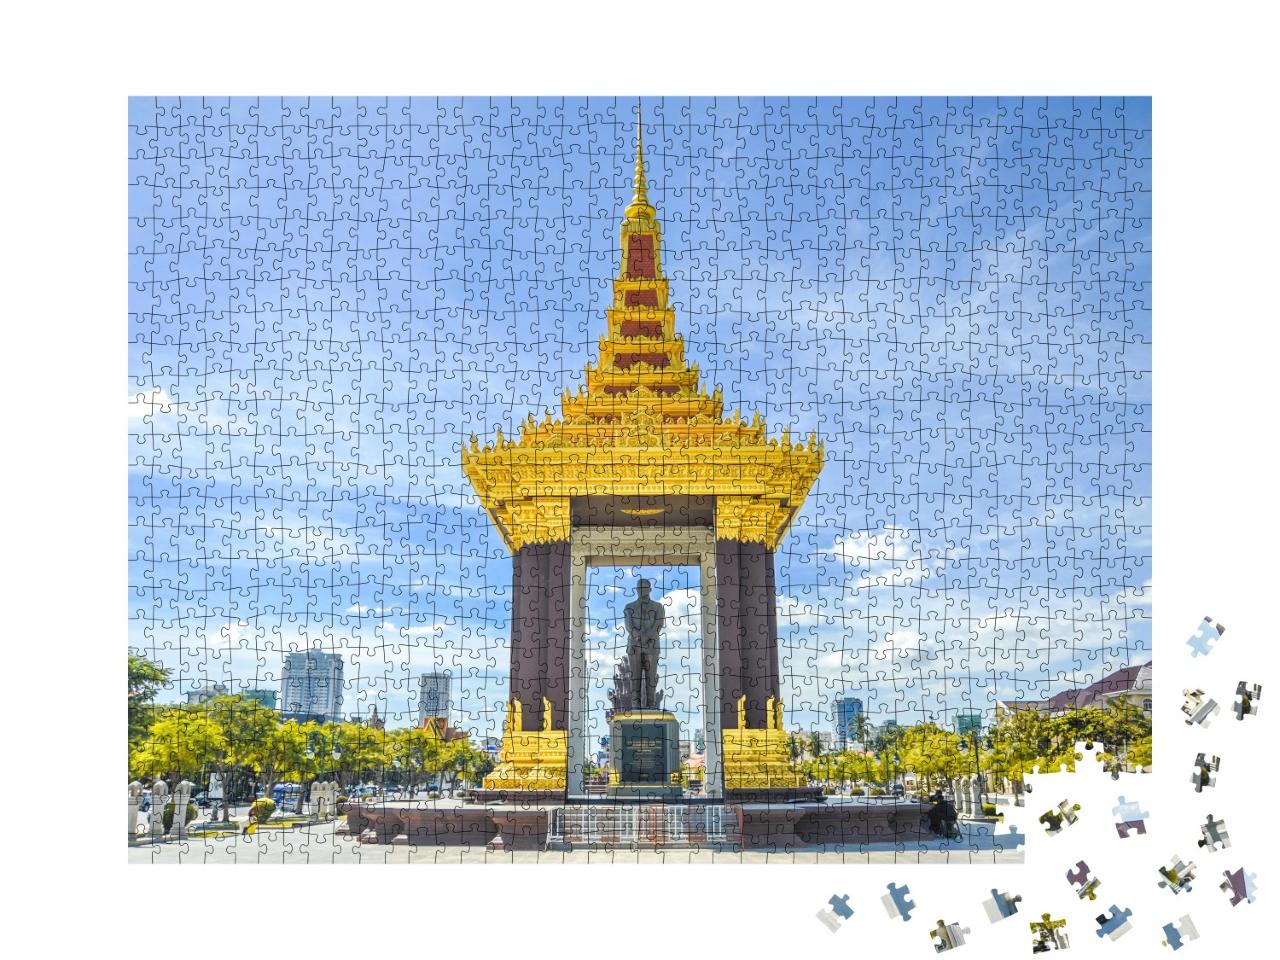 Puzzle de 1000 pièces « Statue royale de Norodom Sihanouk à Phnom Penh, Cambodge »